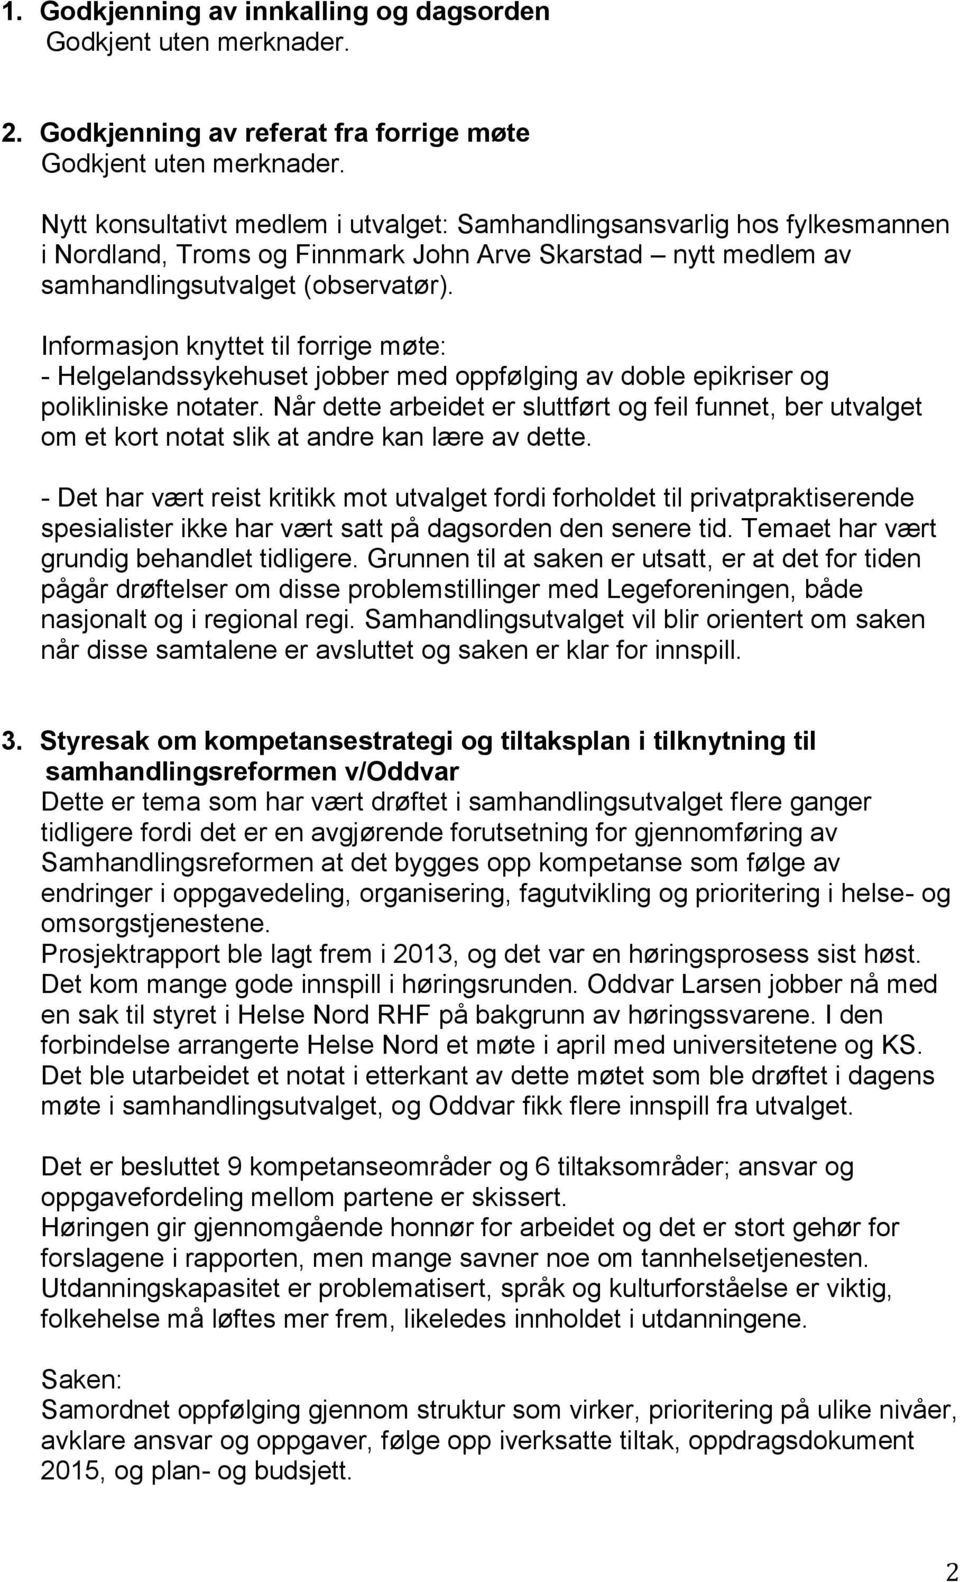 Informasjon knyttet til forrige møte: - Helgelandssykehuset jobber med oppfølging av doble epikriser og polikliniske notater.